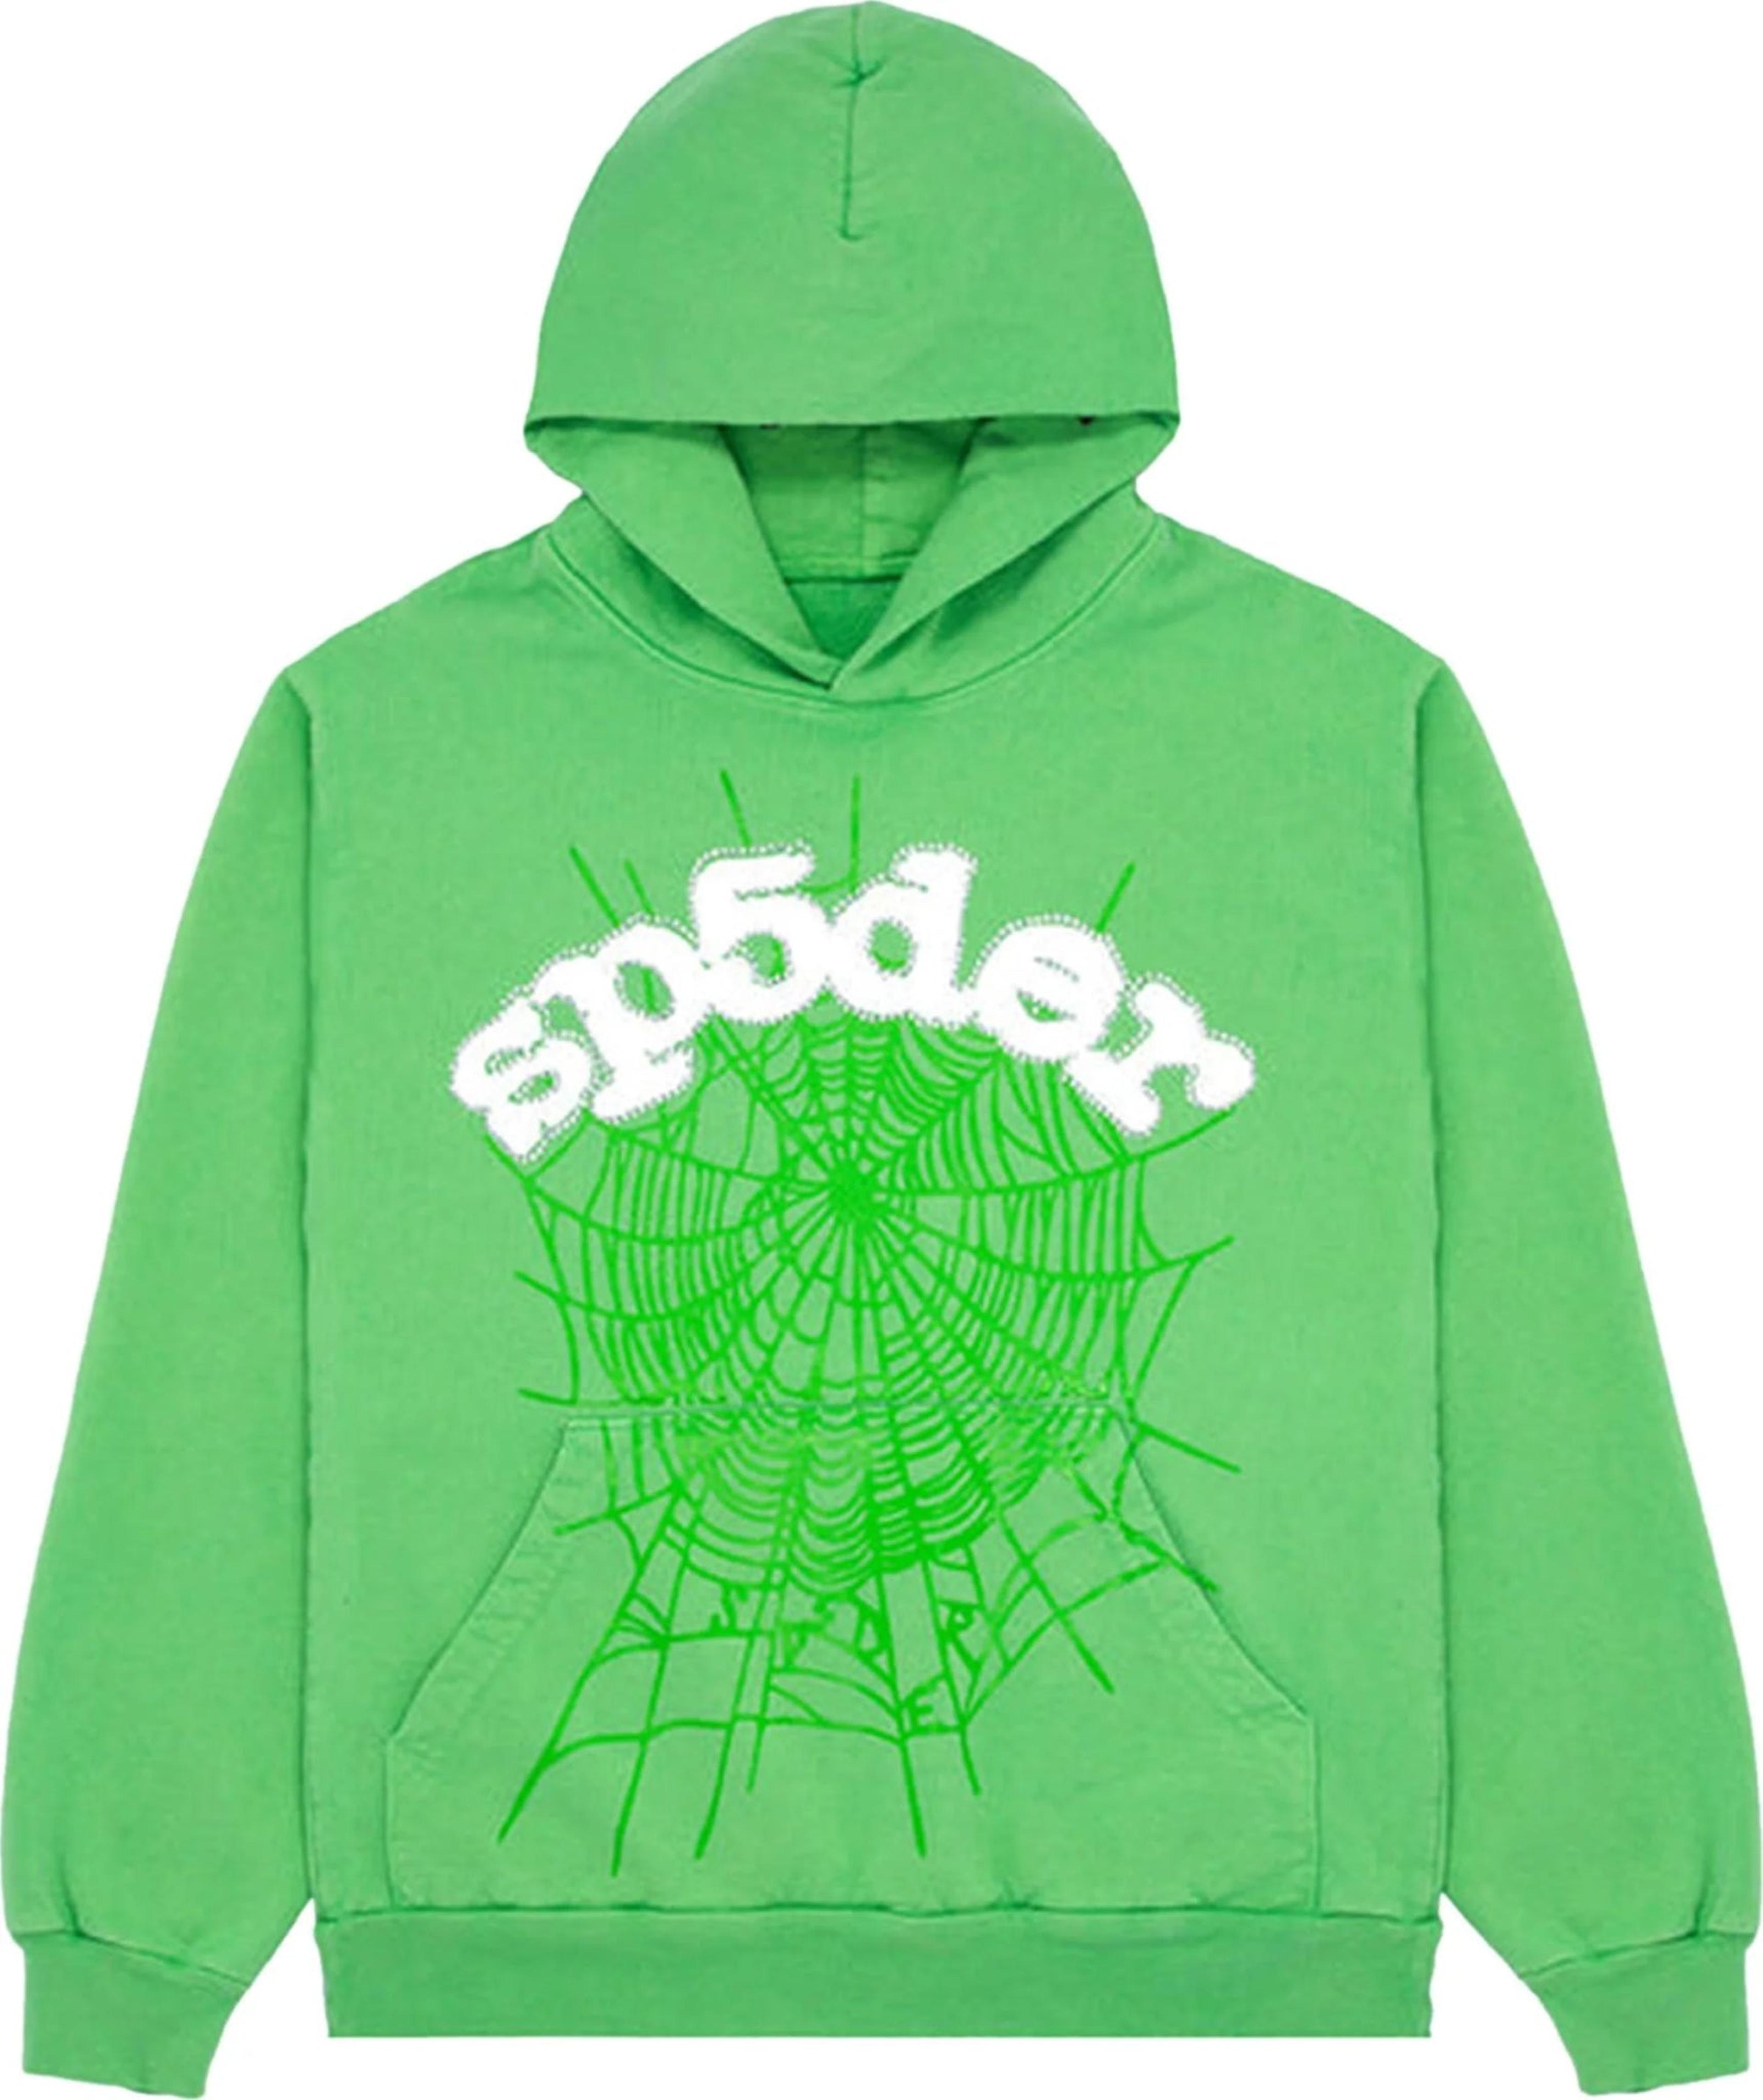 Sp5der Websuit Hoodie Slime Green